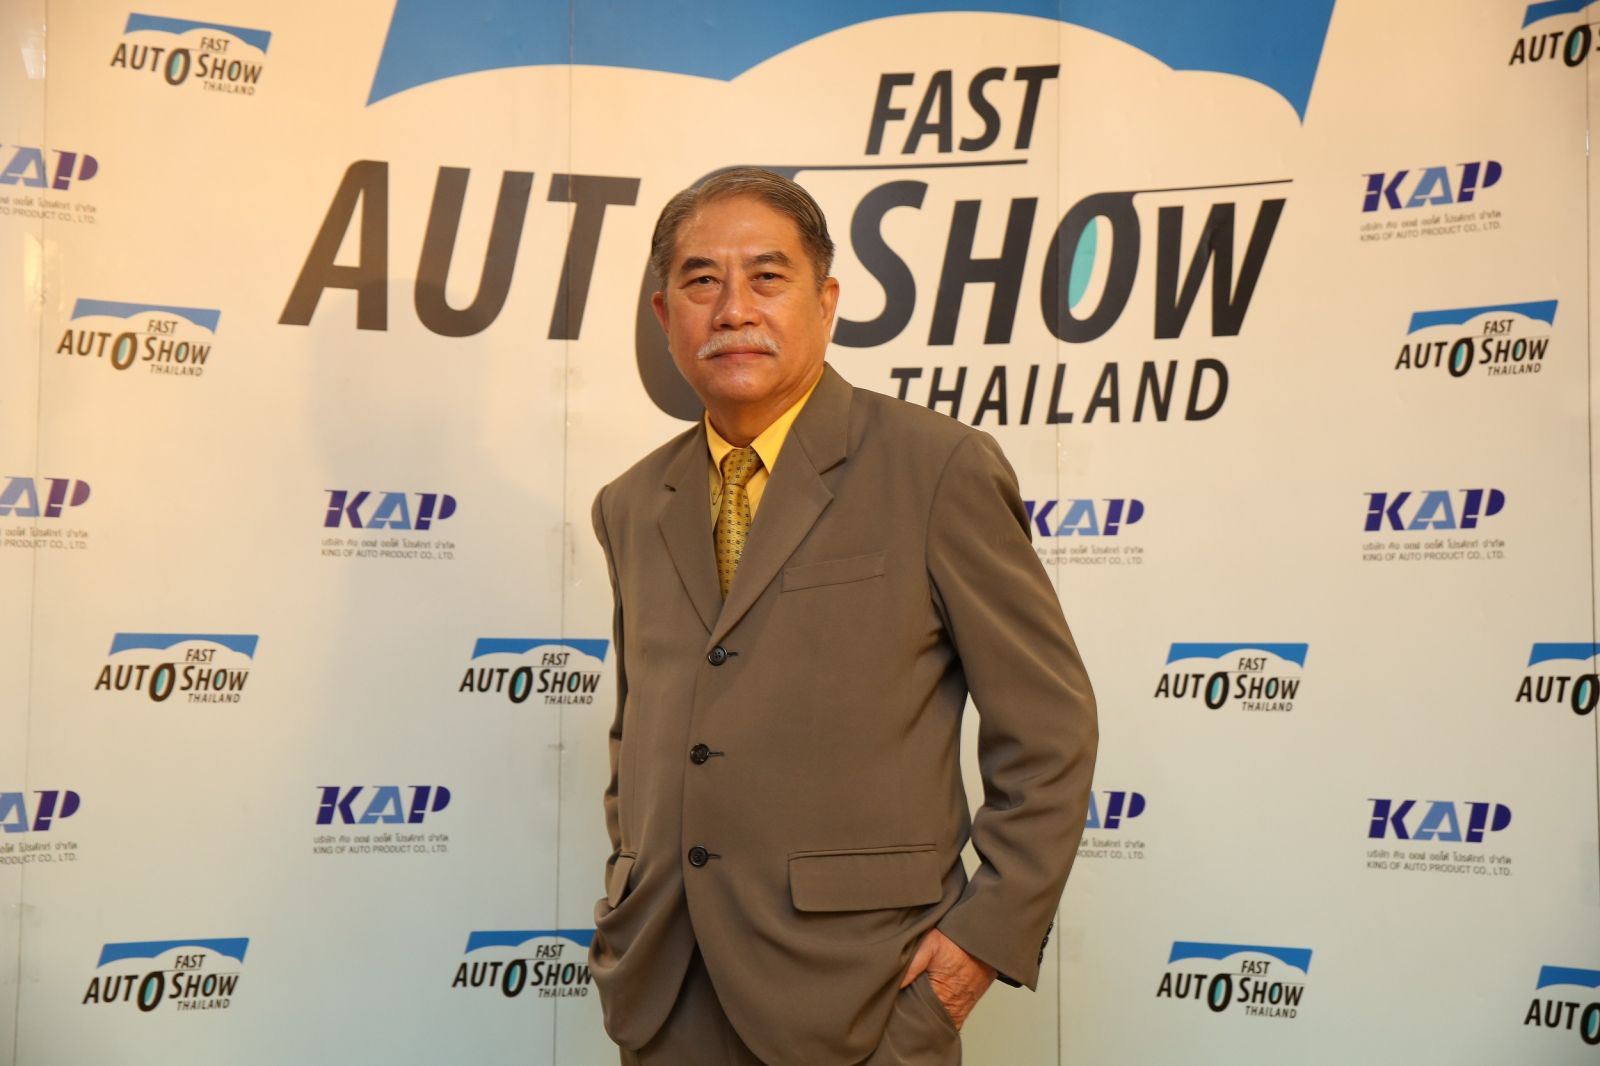 Fast Auto Show